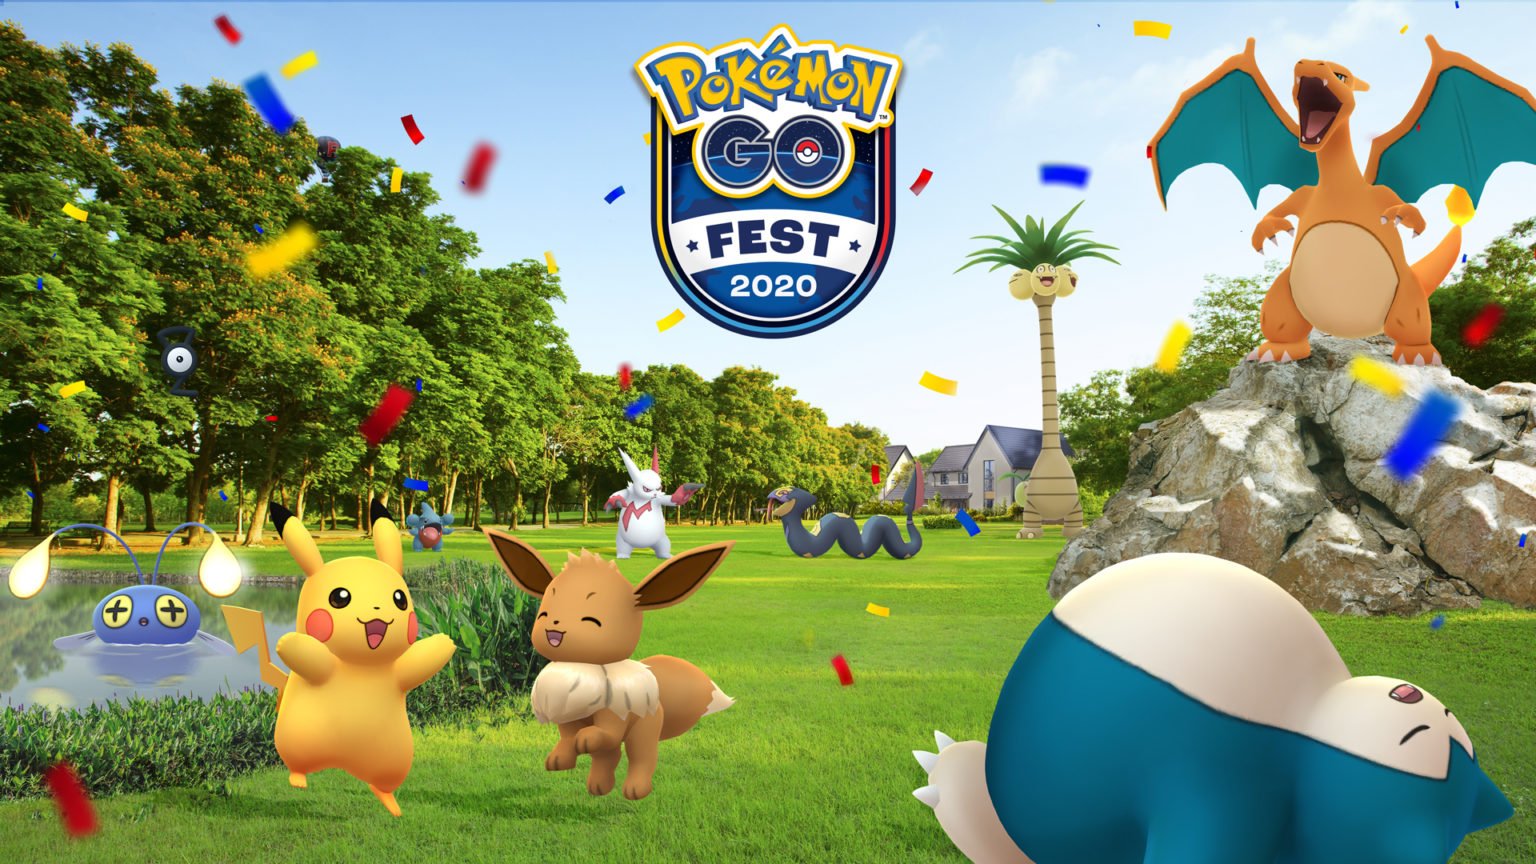 Pokémon Go Fest 2020 will feature 75 unique Pokémon, rotating habitats